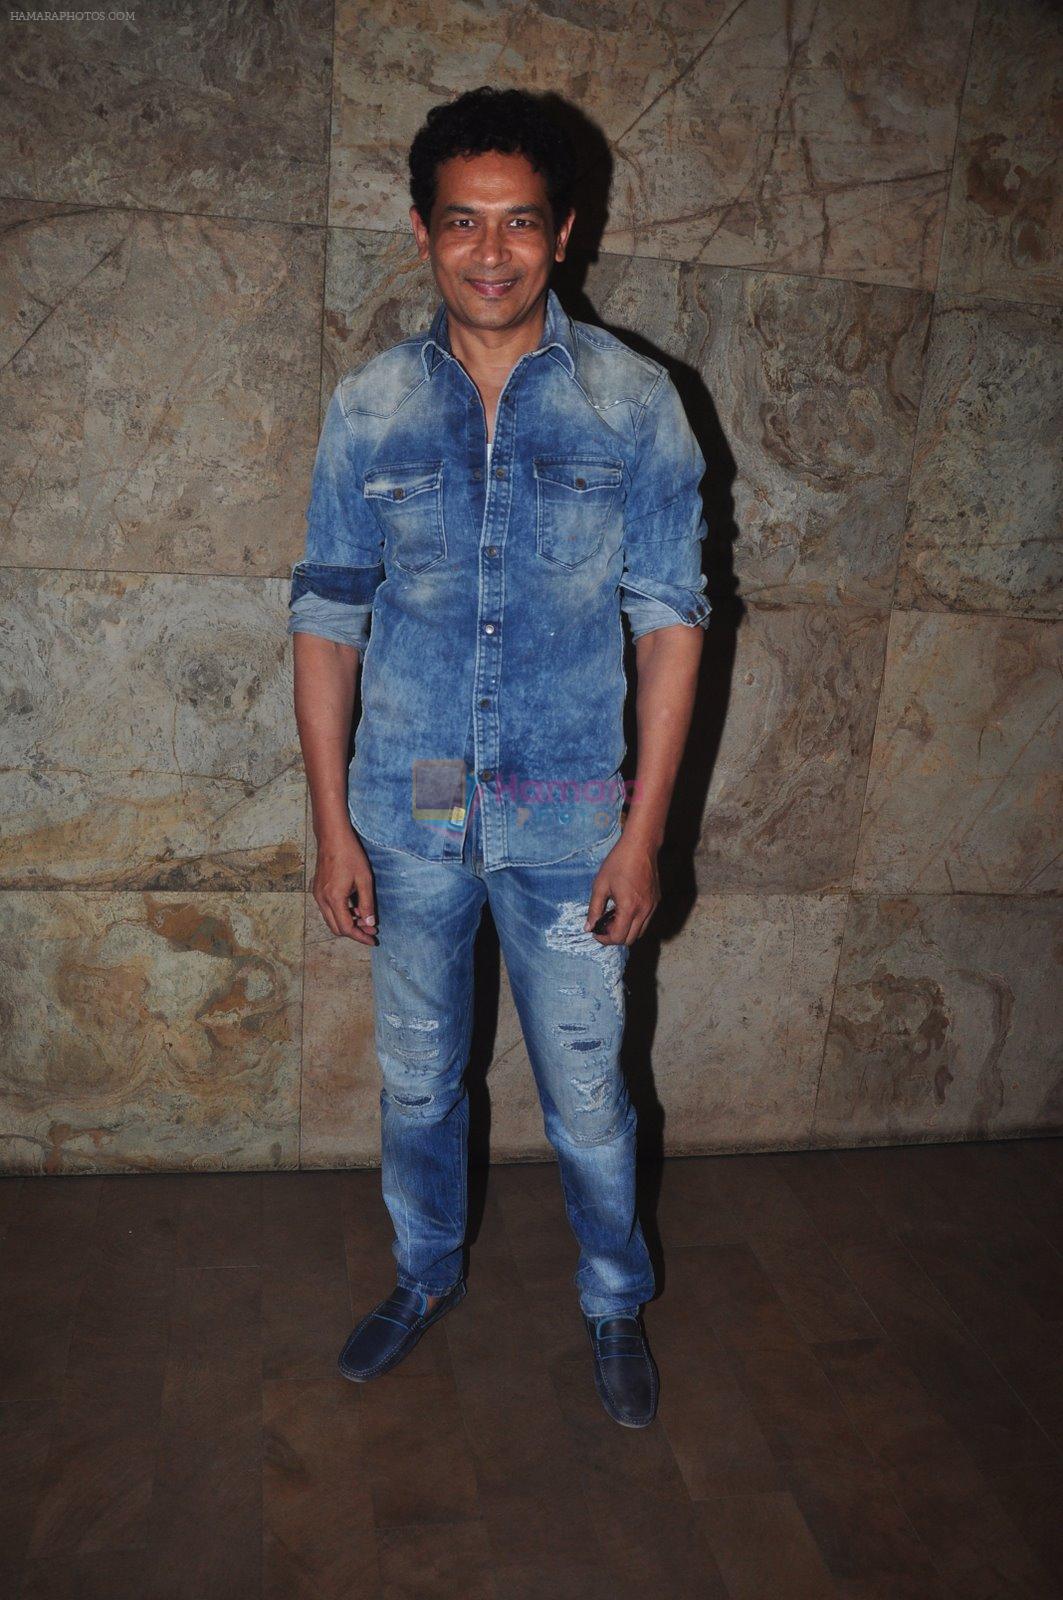 Atul Kulkarni at Marathi film screening in Lightbox, Mumbai on 17th Dec 2014